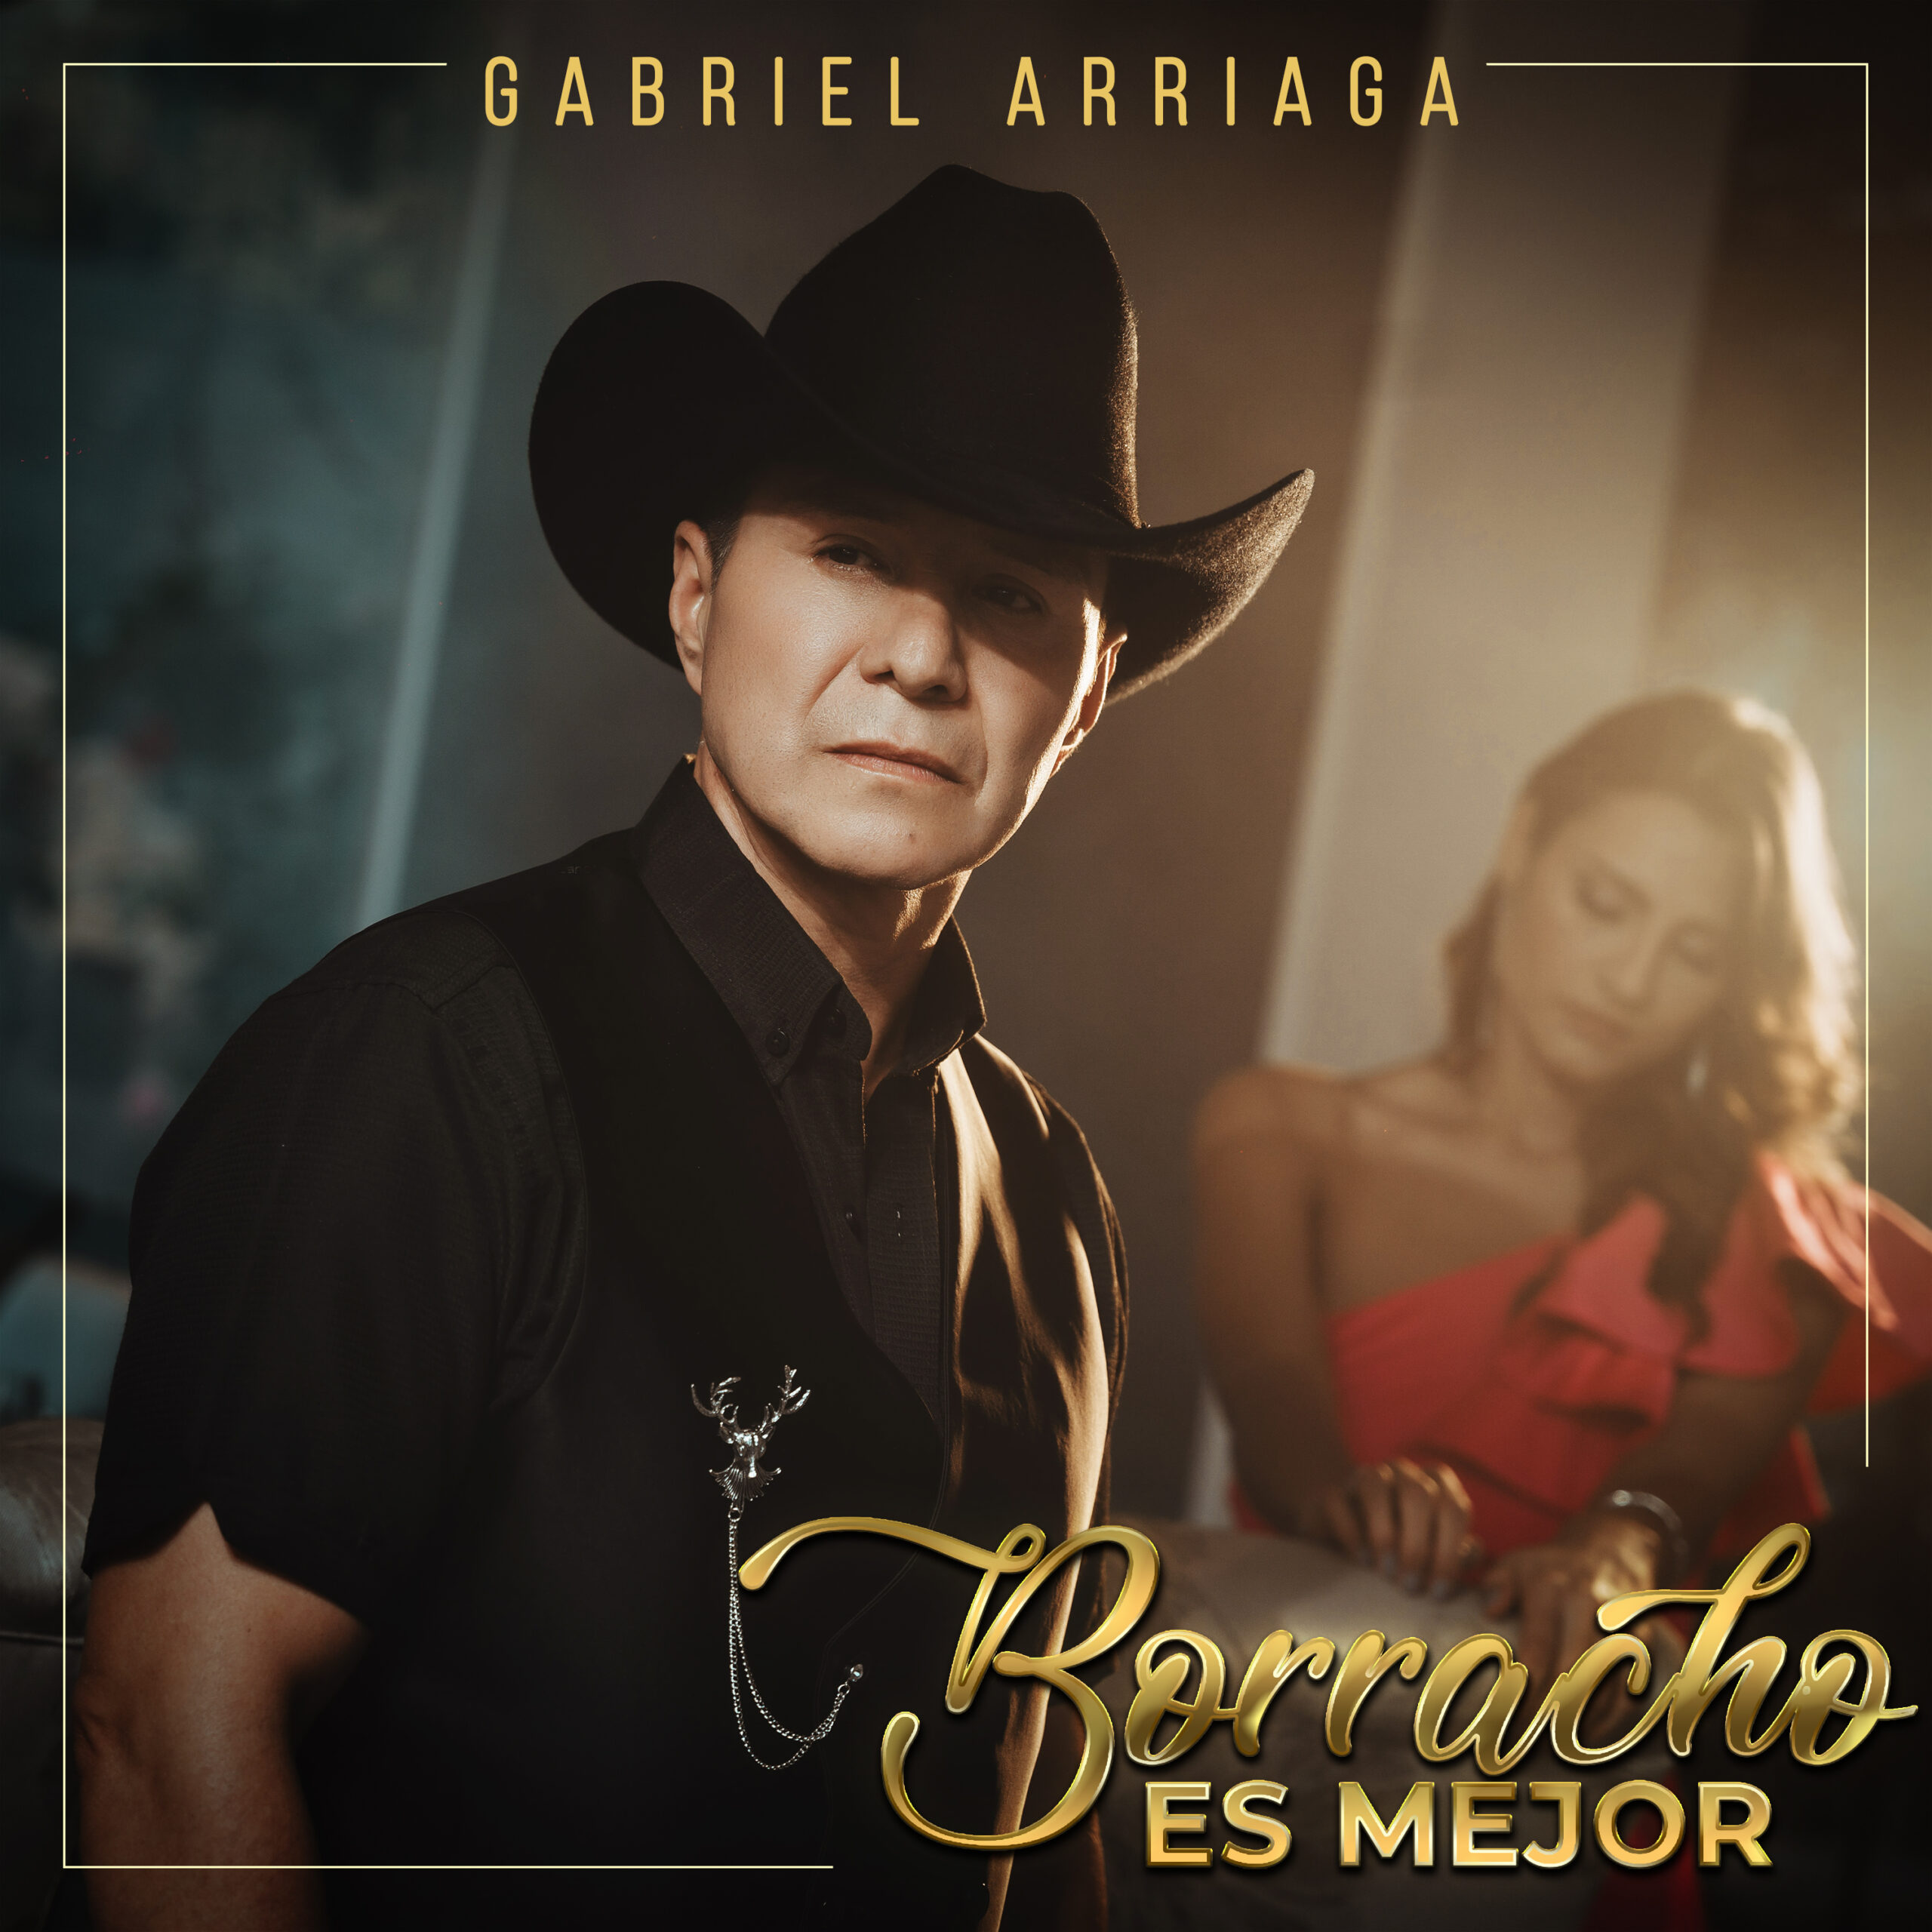 Gabriel Arriaga dice “Borracho es Mejor” en su nuevo lanzamiento musical